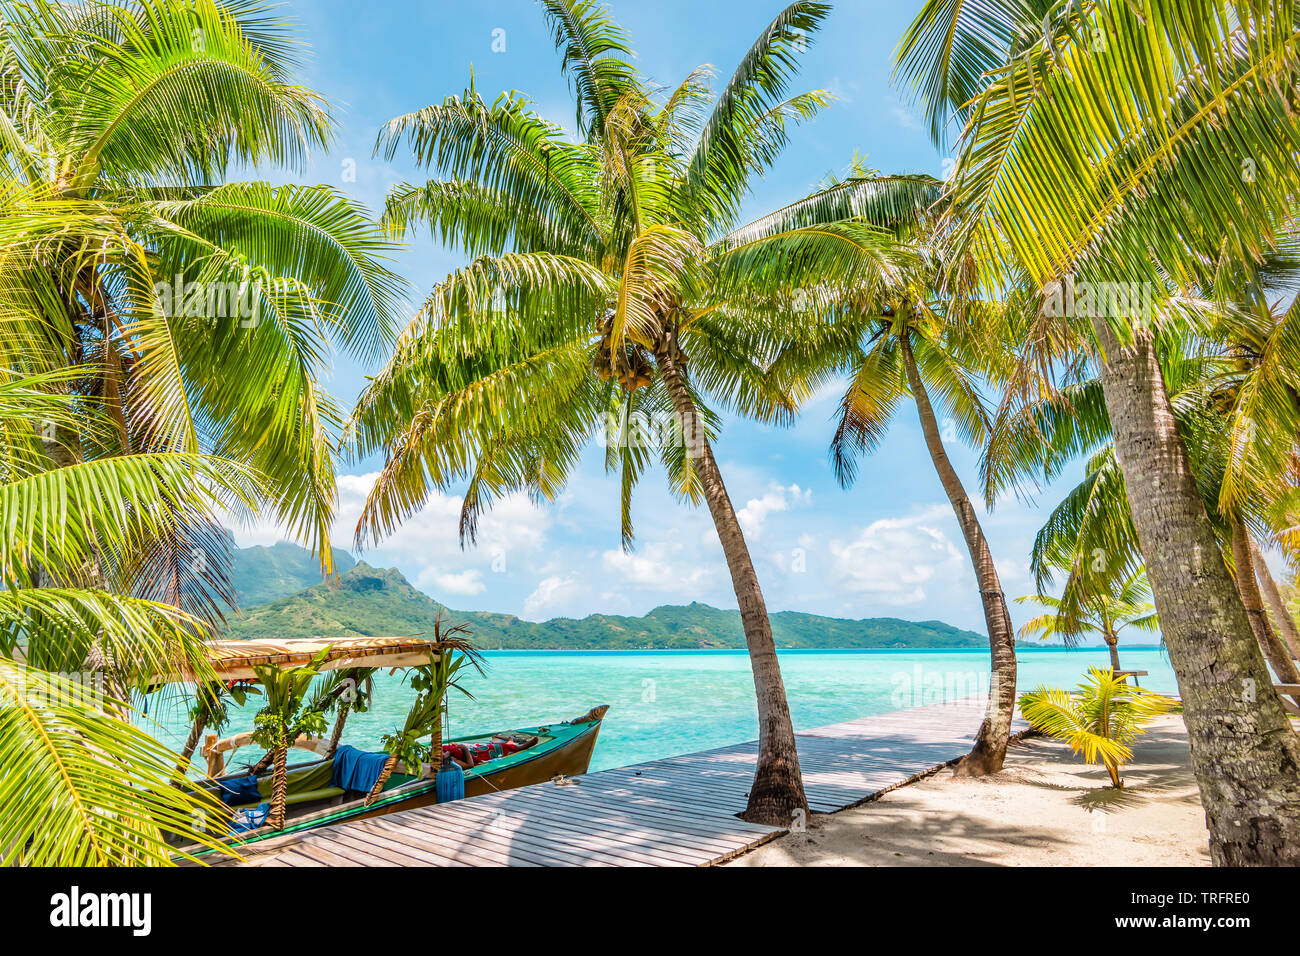 Schöne Landschaft mit Kokospalmen auf tropischer Insel Bora Bora. Eingerichtete touristische Boot an der hölzernen Kai. Stockfoto